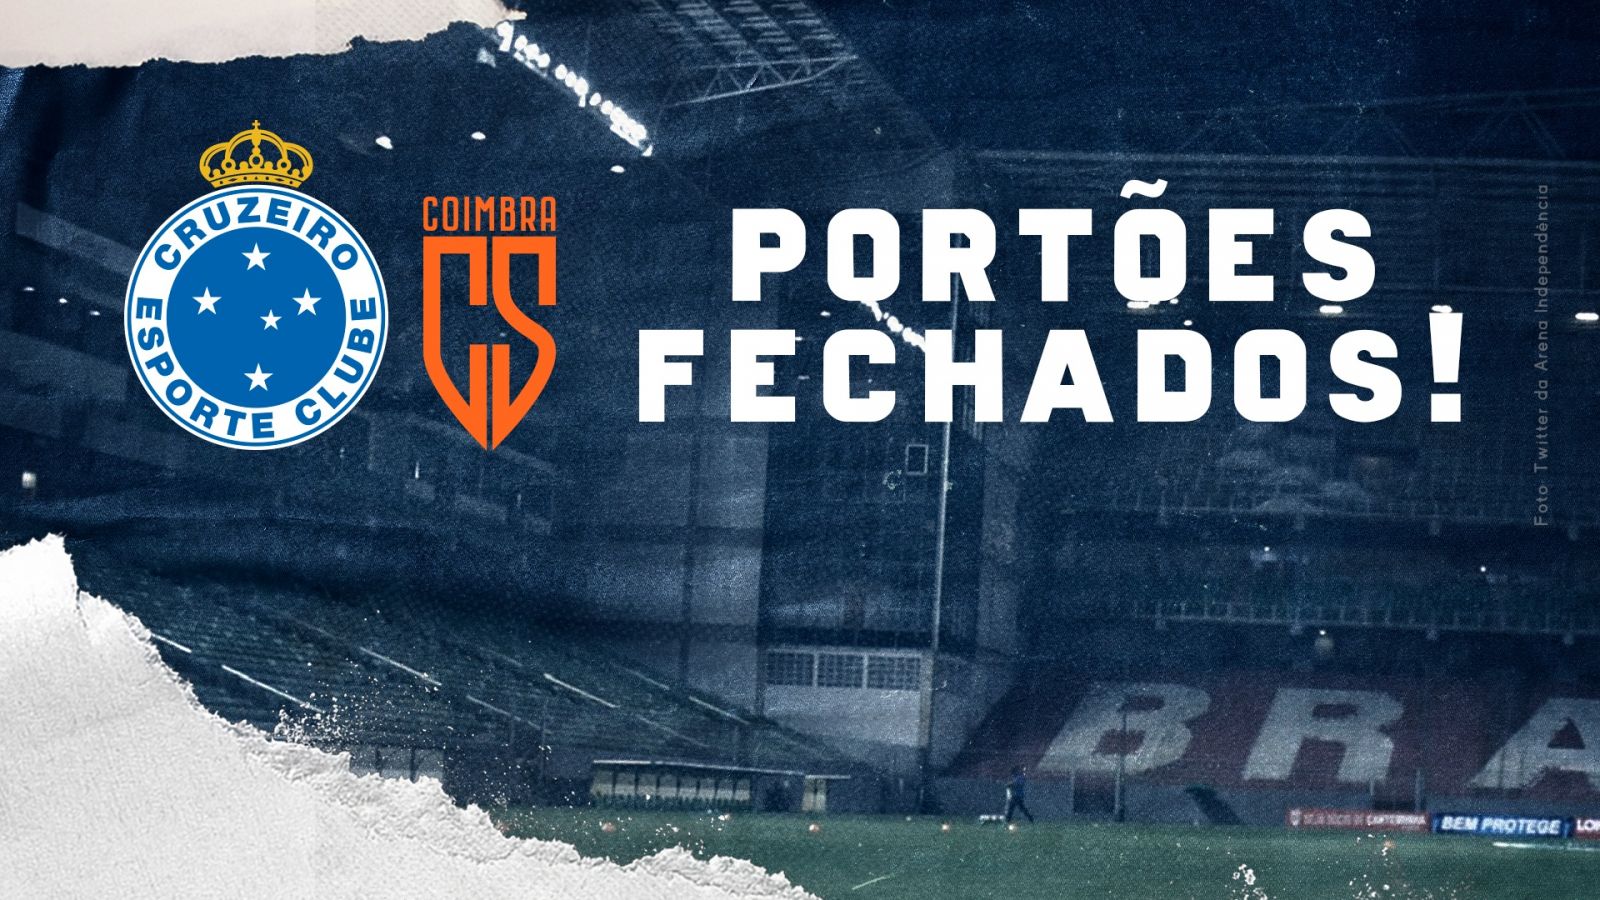 Jogo entre Cruzeiro e Coimbra será com portões fechados; torcedores que compraram ingressos podem solicitar reembolso